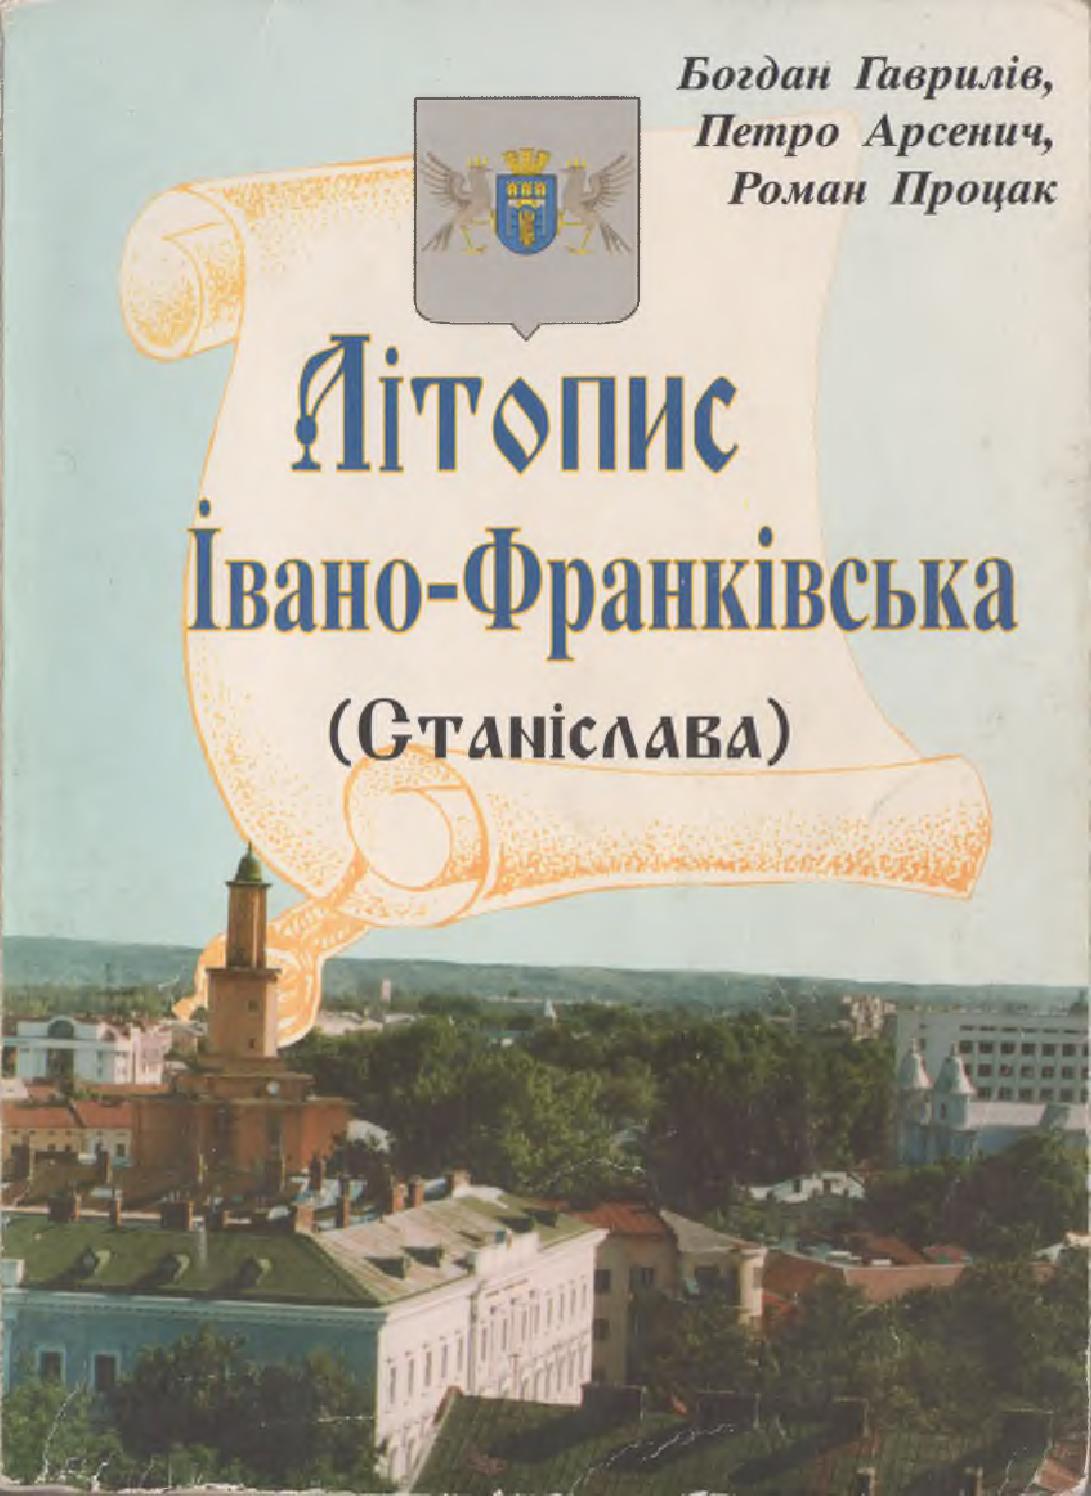 Літопис Івано-Франківська (Станіслава), 1998, Гаврилів Б., Арсенич П., Процак Р.